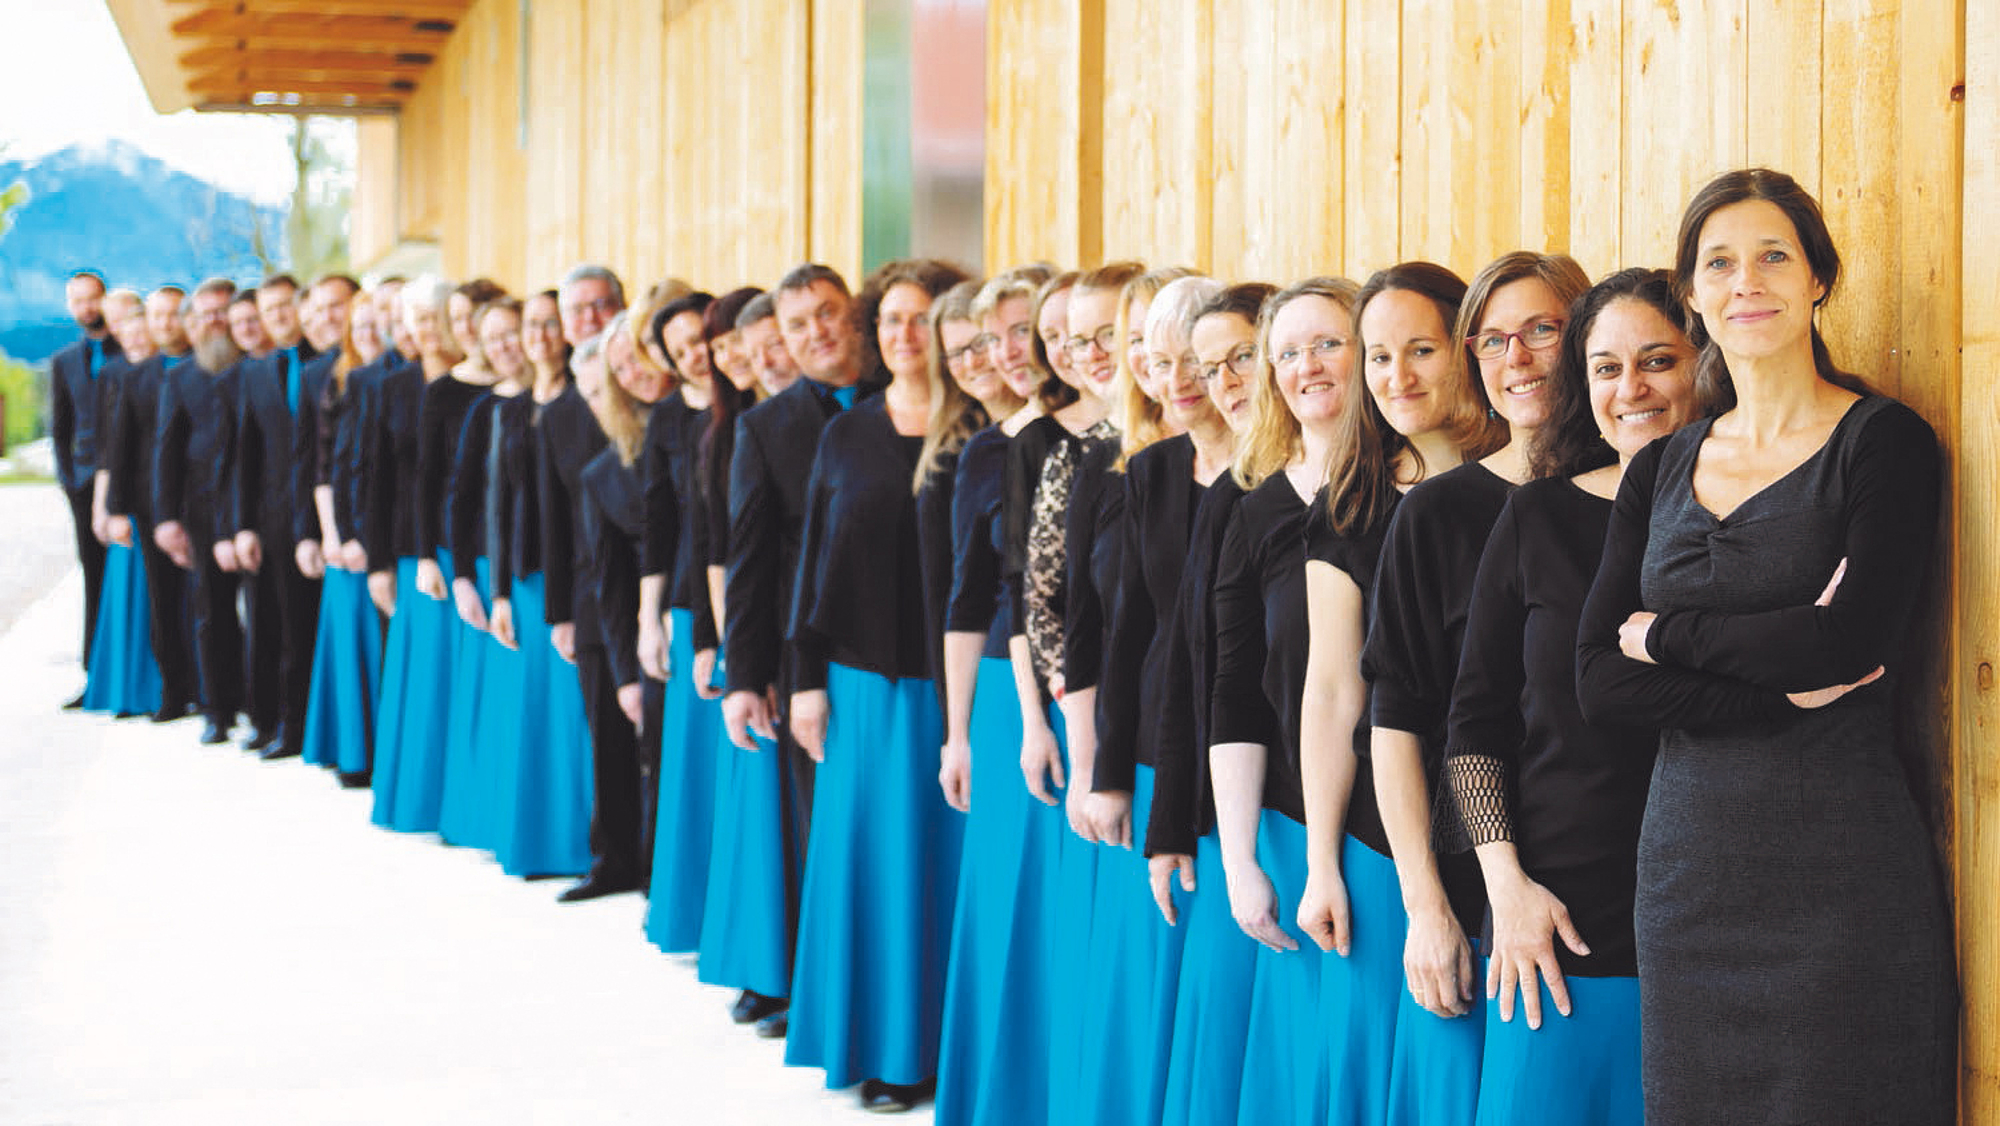 Das Bild zeigt einen Chor in blauer und schwarzer Kleidung. 